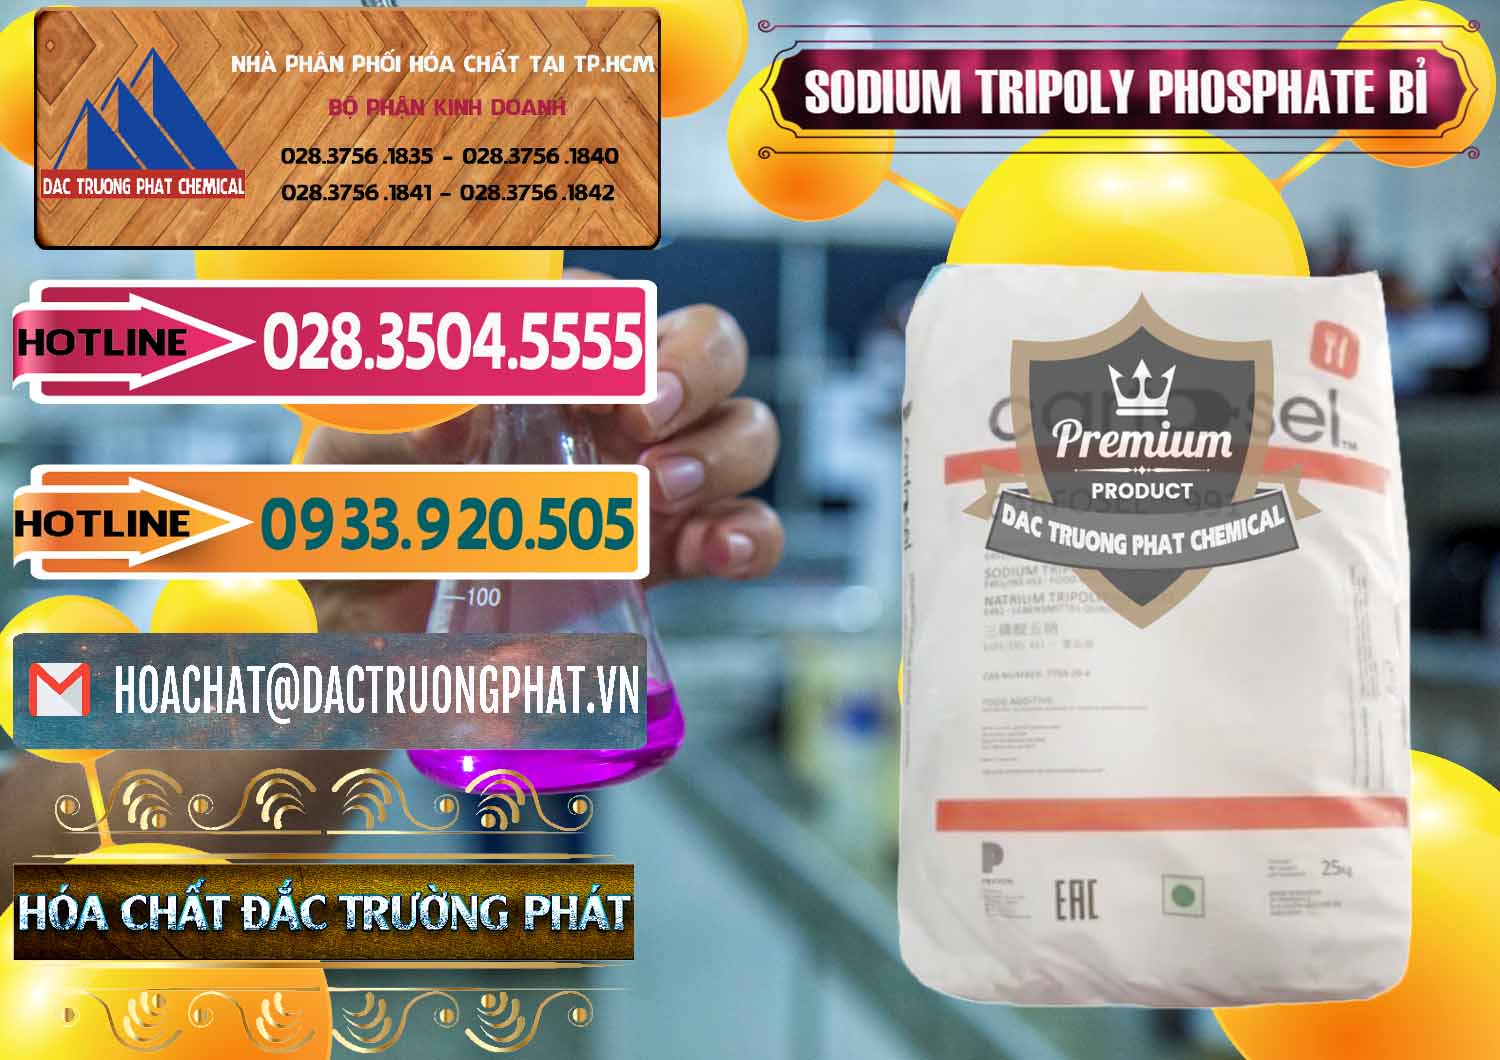 Cty nhập khẩu và bán Sodium Tripoly Phosphate - STPP Carfosel 991 Bỉ Belgium - 0429 - Nơi nhập khẩu & cung cấp hóa chất tại TP.HCM - dactruongphat.vn